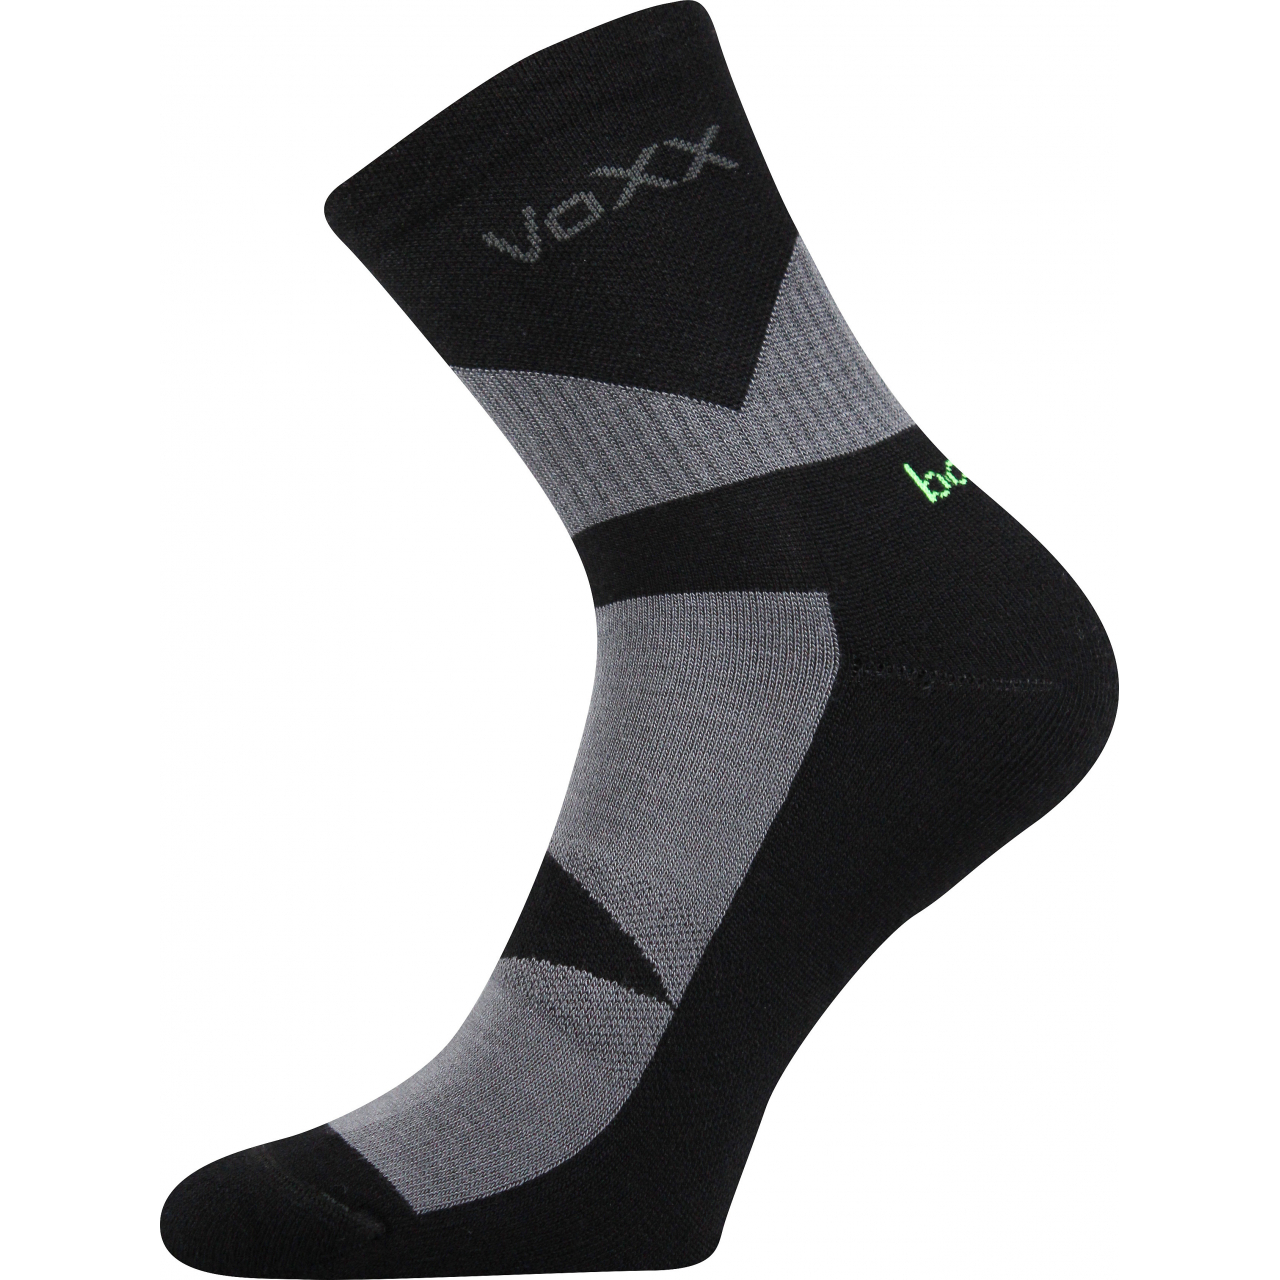 Ponožky sportovní Voxx Bambo - černé-šedé, 35-38